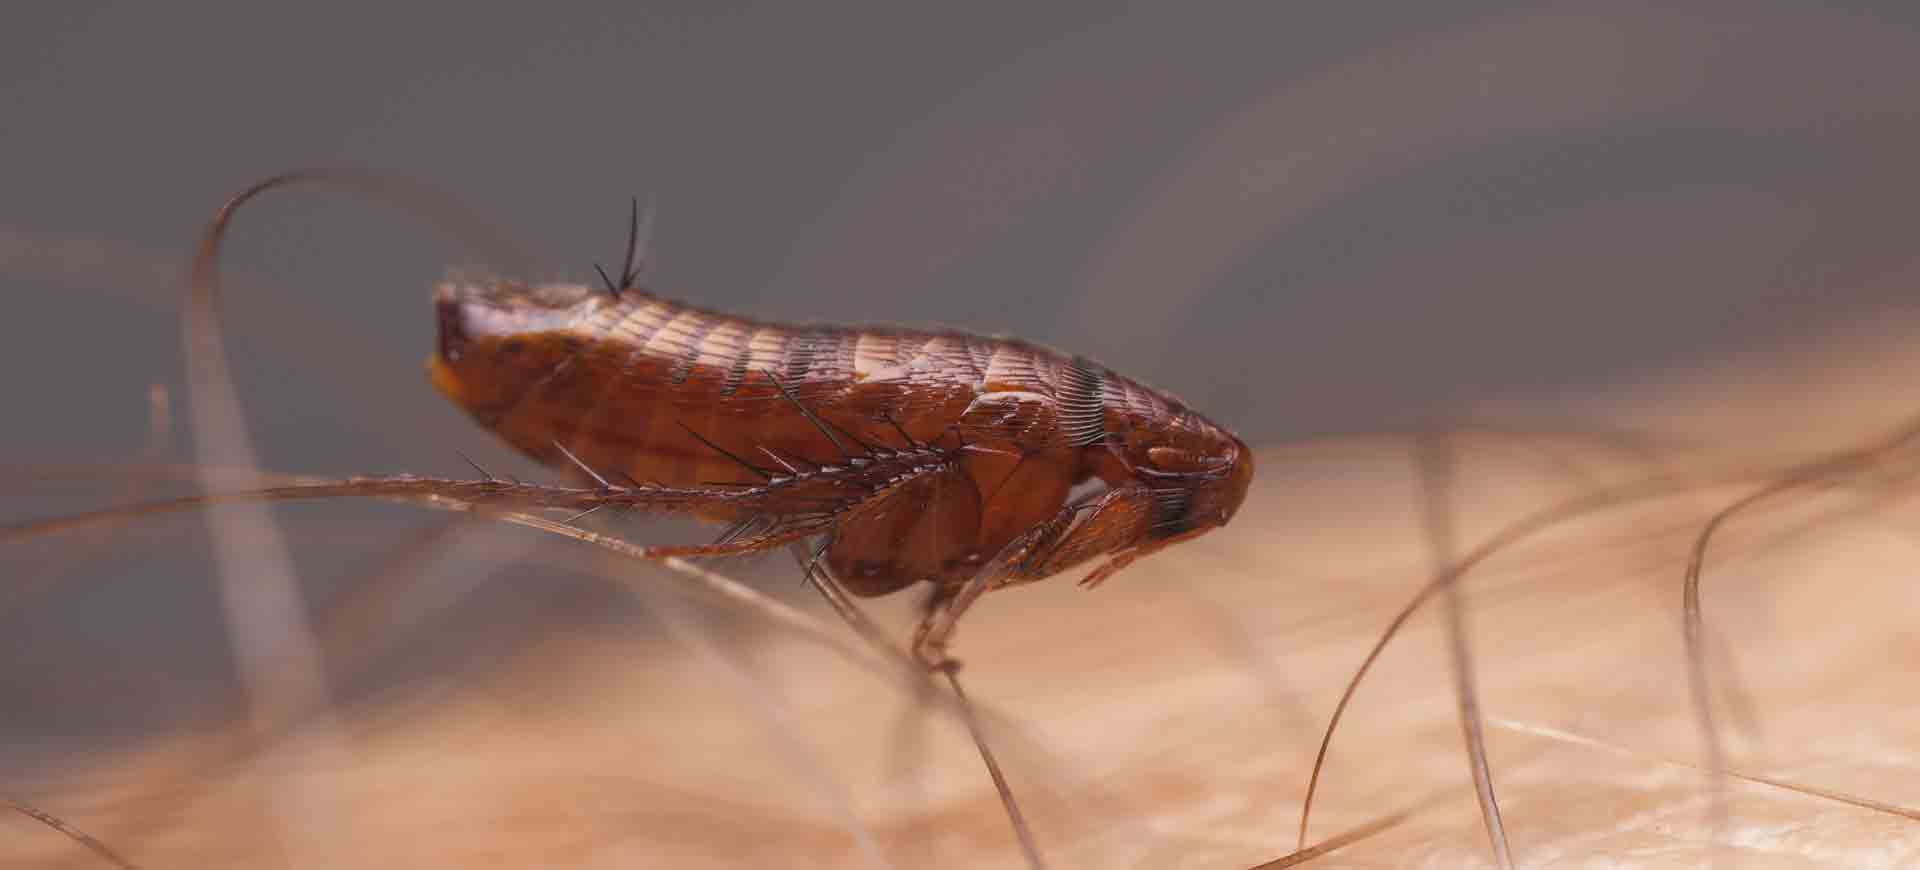 flea pest control lakeside